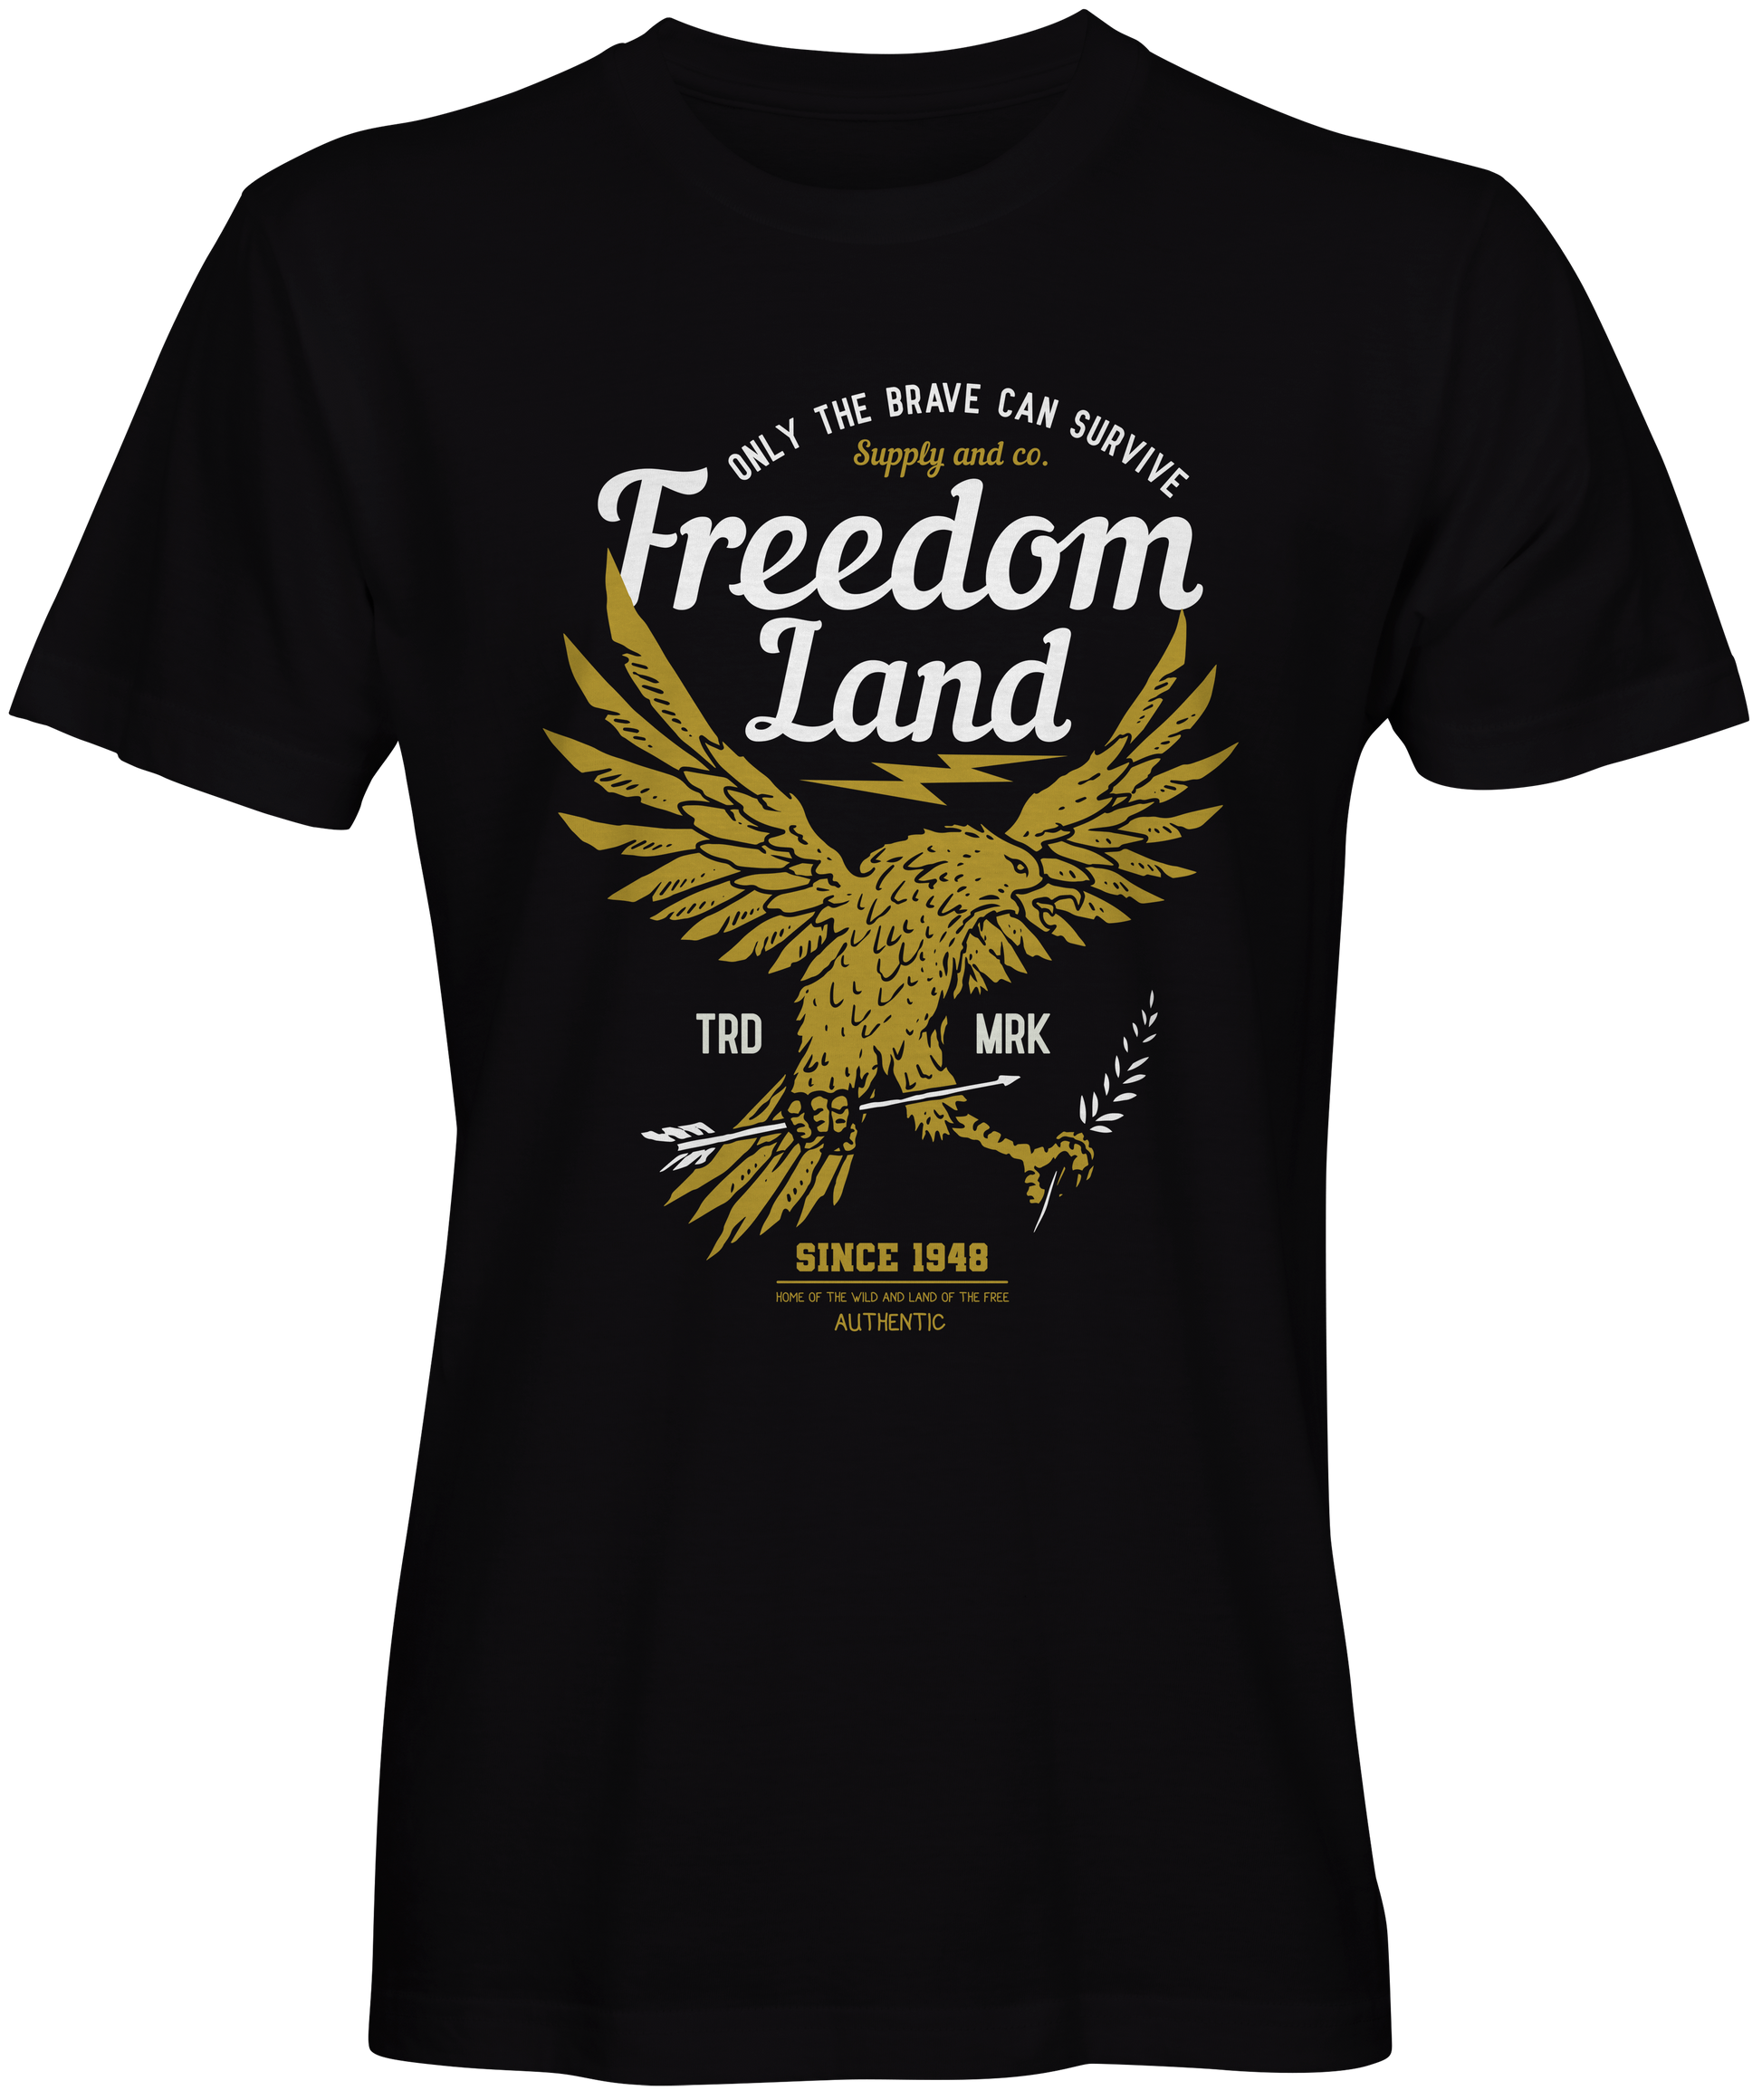 Freedom Land T-shirts